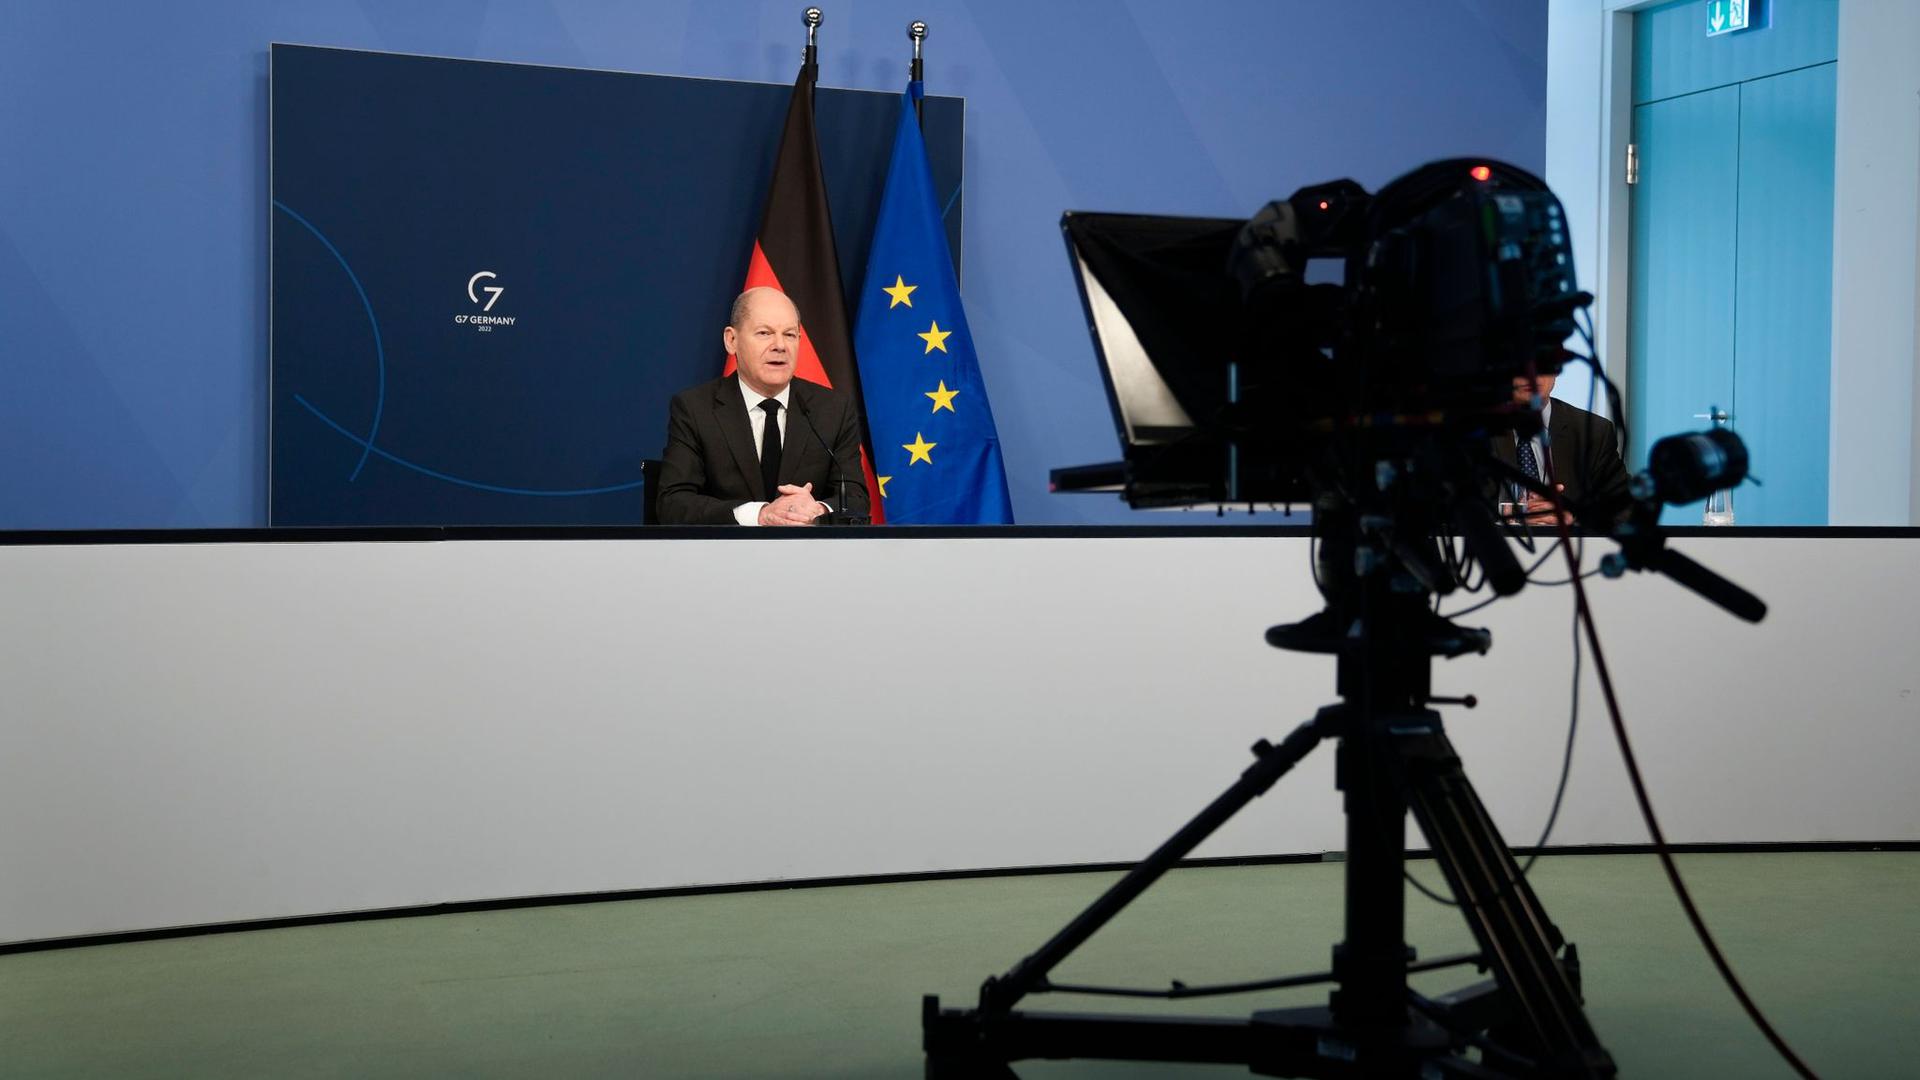 Bundeskanzler Olaf Scholz (SPD) hält eine Rede bei einer Videokonferenz im Rahmen des Weltwirtschaftsforums Davos Agenda 2022.